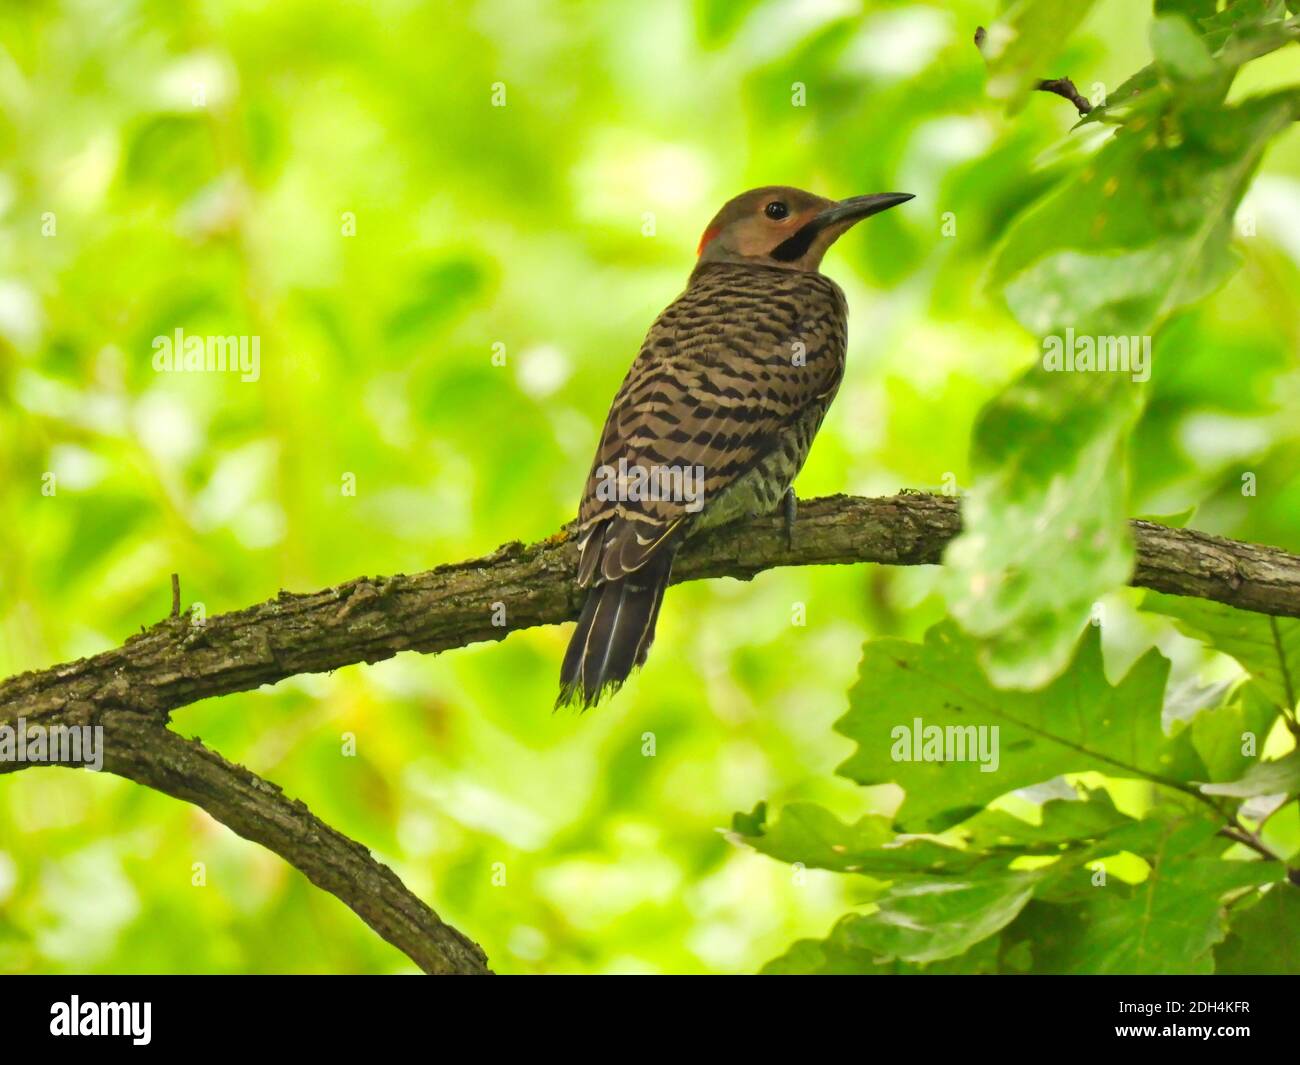 Northern Flicker Specht Vogel thront auf einem Baum Zweig mit Üppige grüne Vegetation und Blätter rund um den männlichen Specht Mit seinem Kopf T Stockfoto